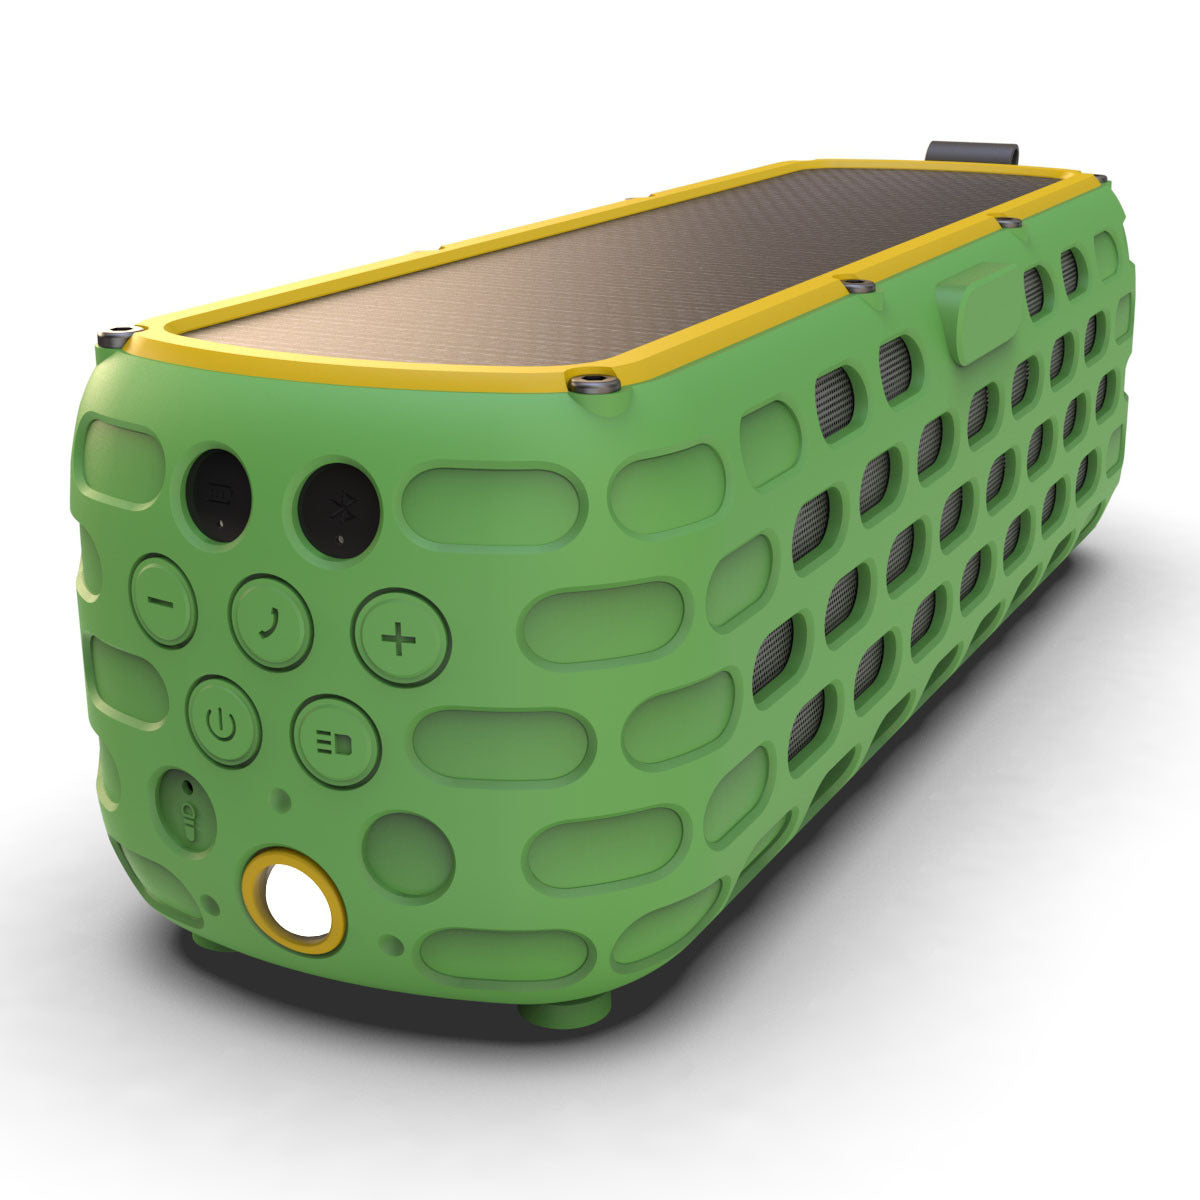 Solar Energy Speaker System - Portable Solar Speaker